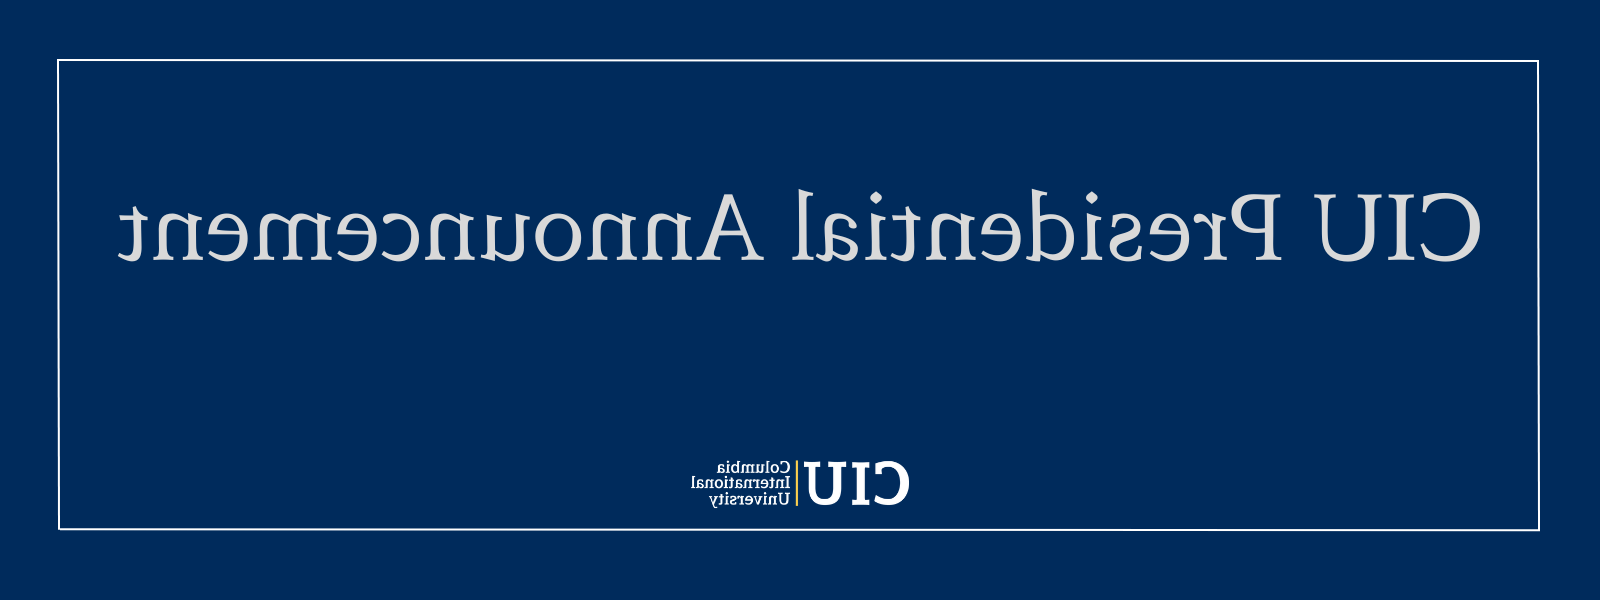 Blue box with CIU logo and text: CIU Presidential Announcement